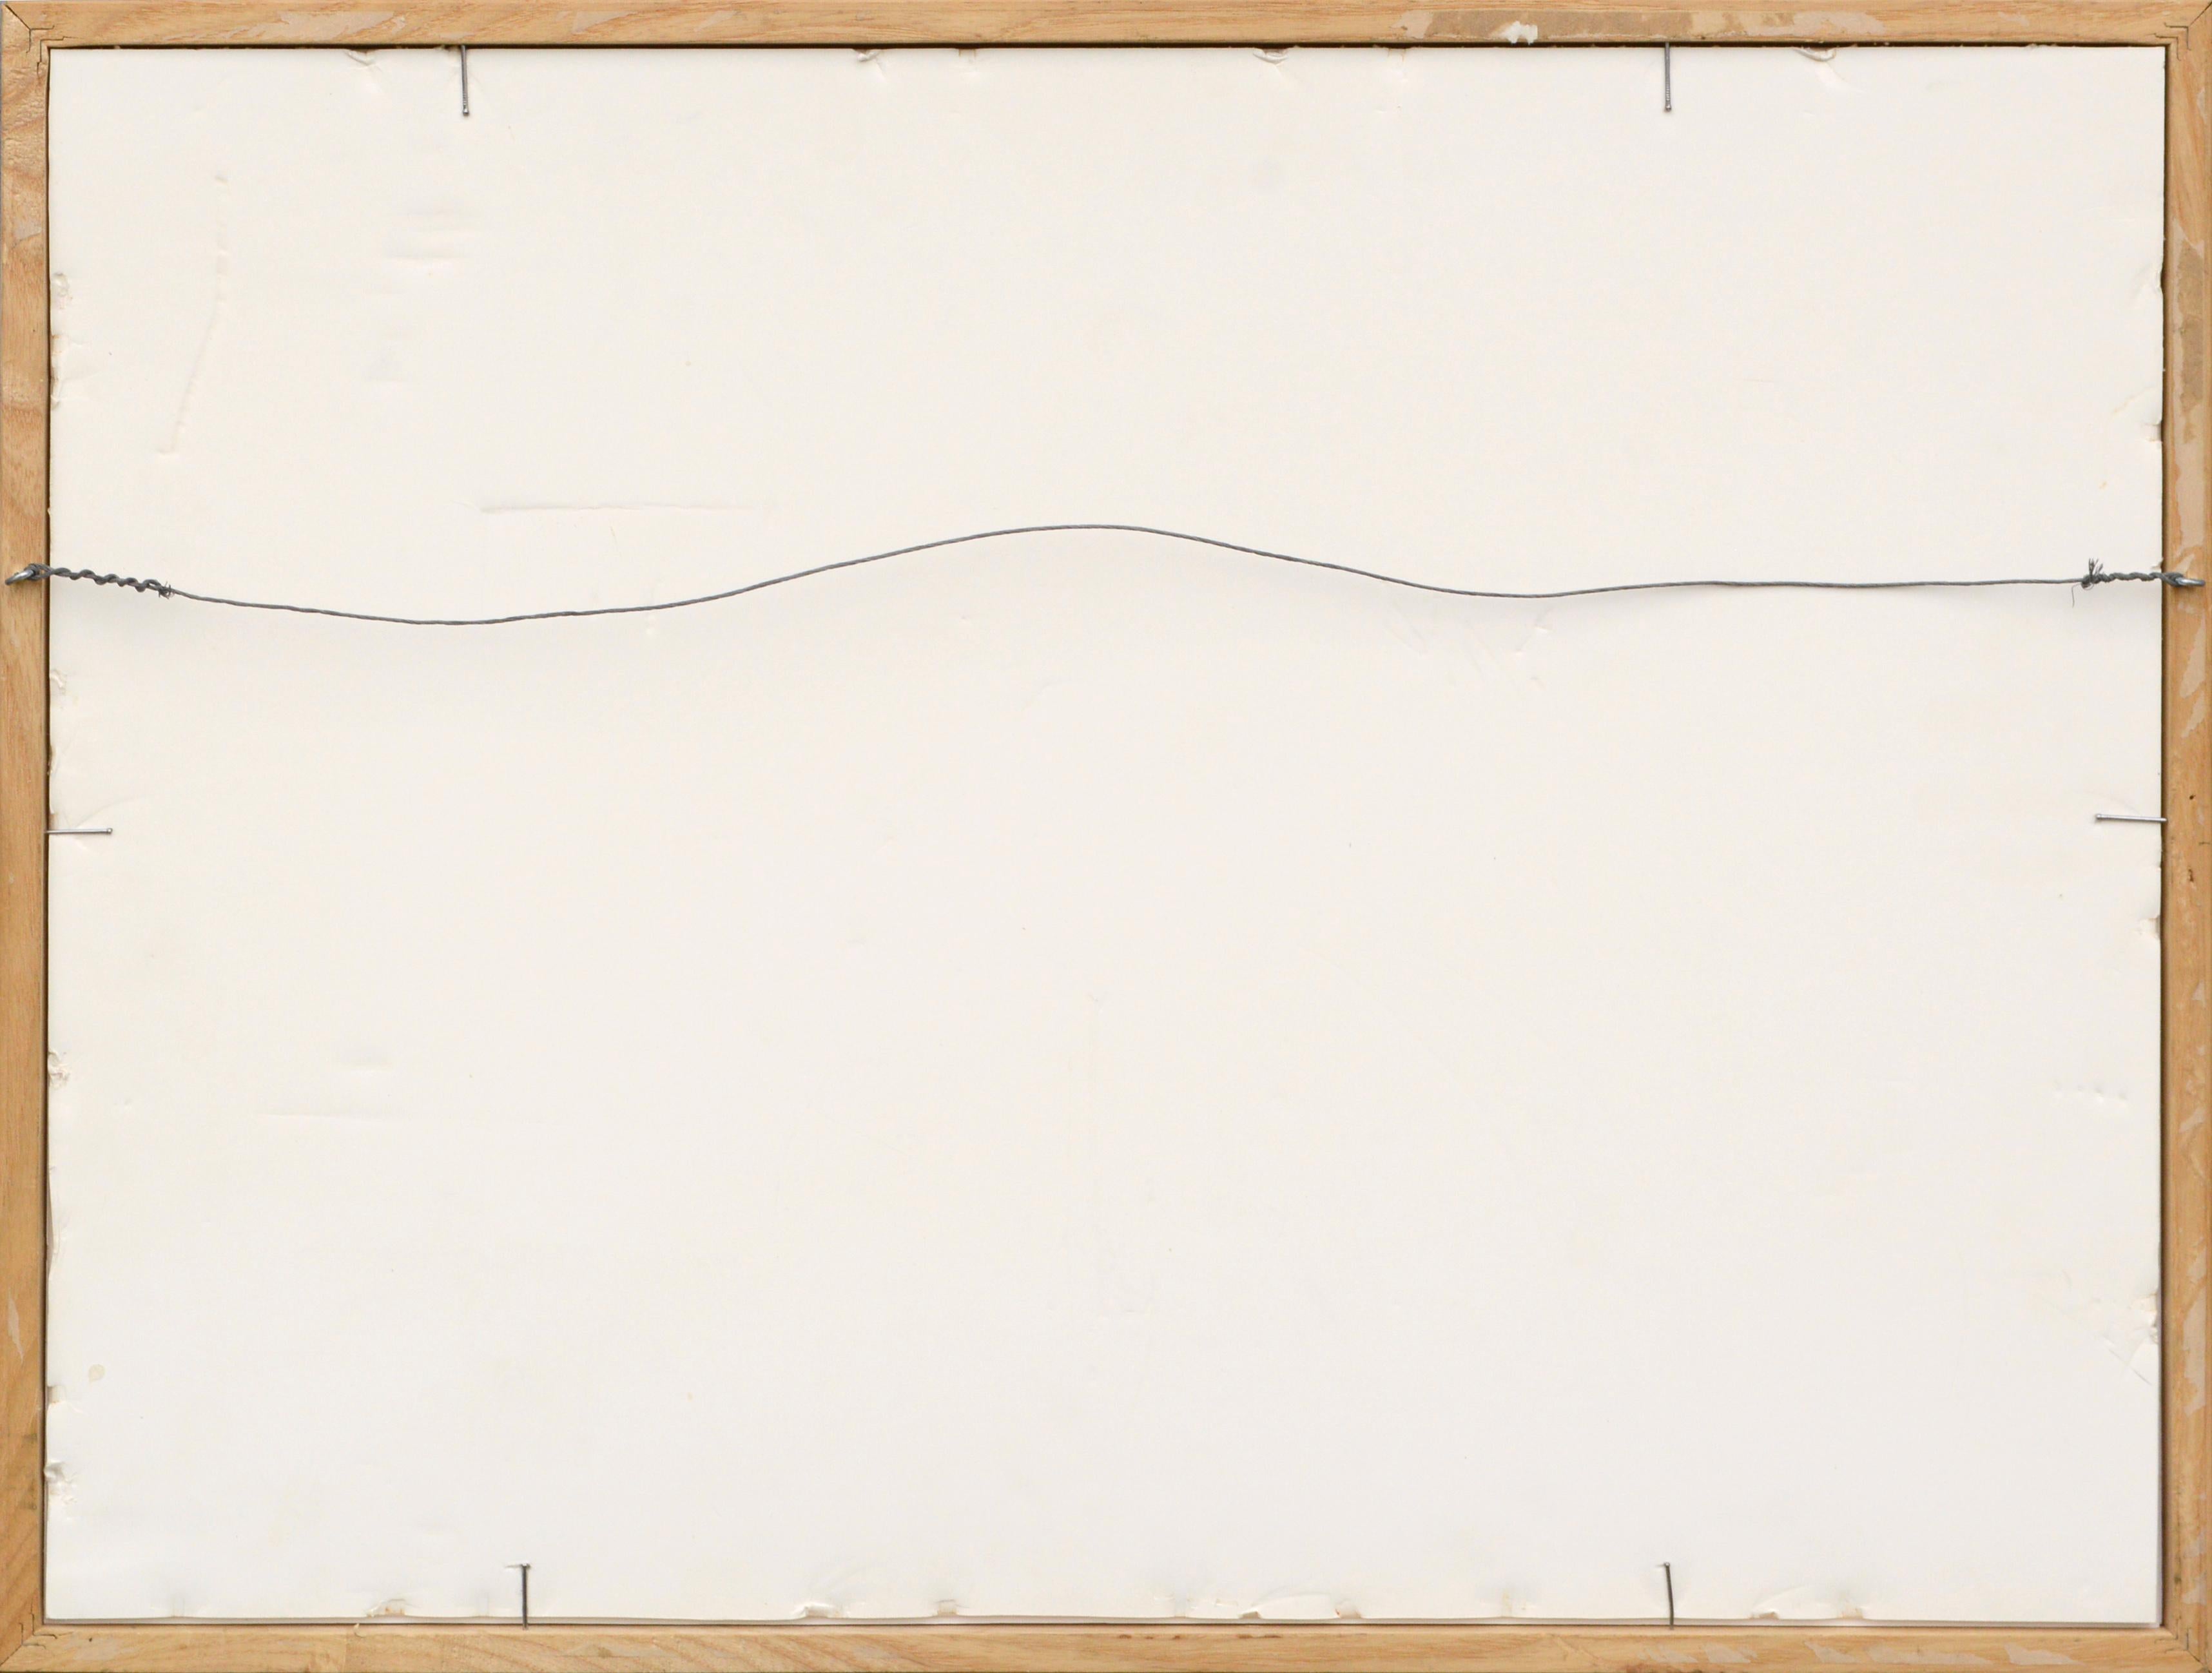 Neoexpressionistischer linearer geometrischer Abstrakt #2 - Im Stil von Basquiat 

Dynamische zeitgenössische neoexpressionistische abstrakte Komposition in Rot, Gelb, Schwarz und Grüntönen des kalifornischen Künstlers Peter Costello (Amerikaner,